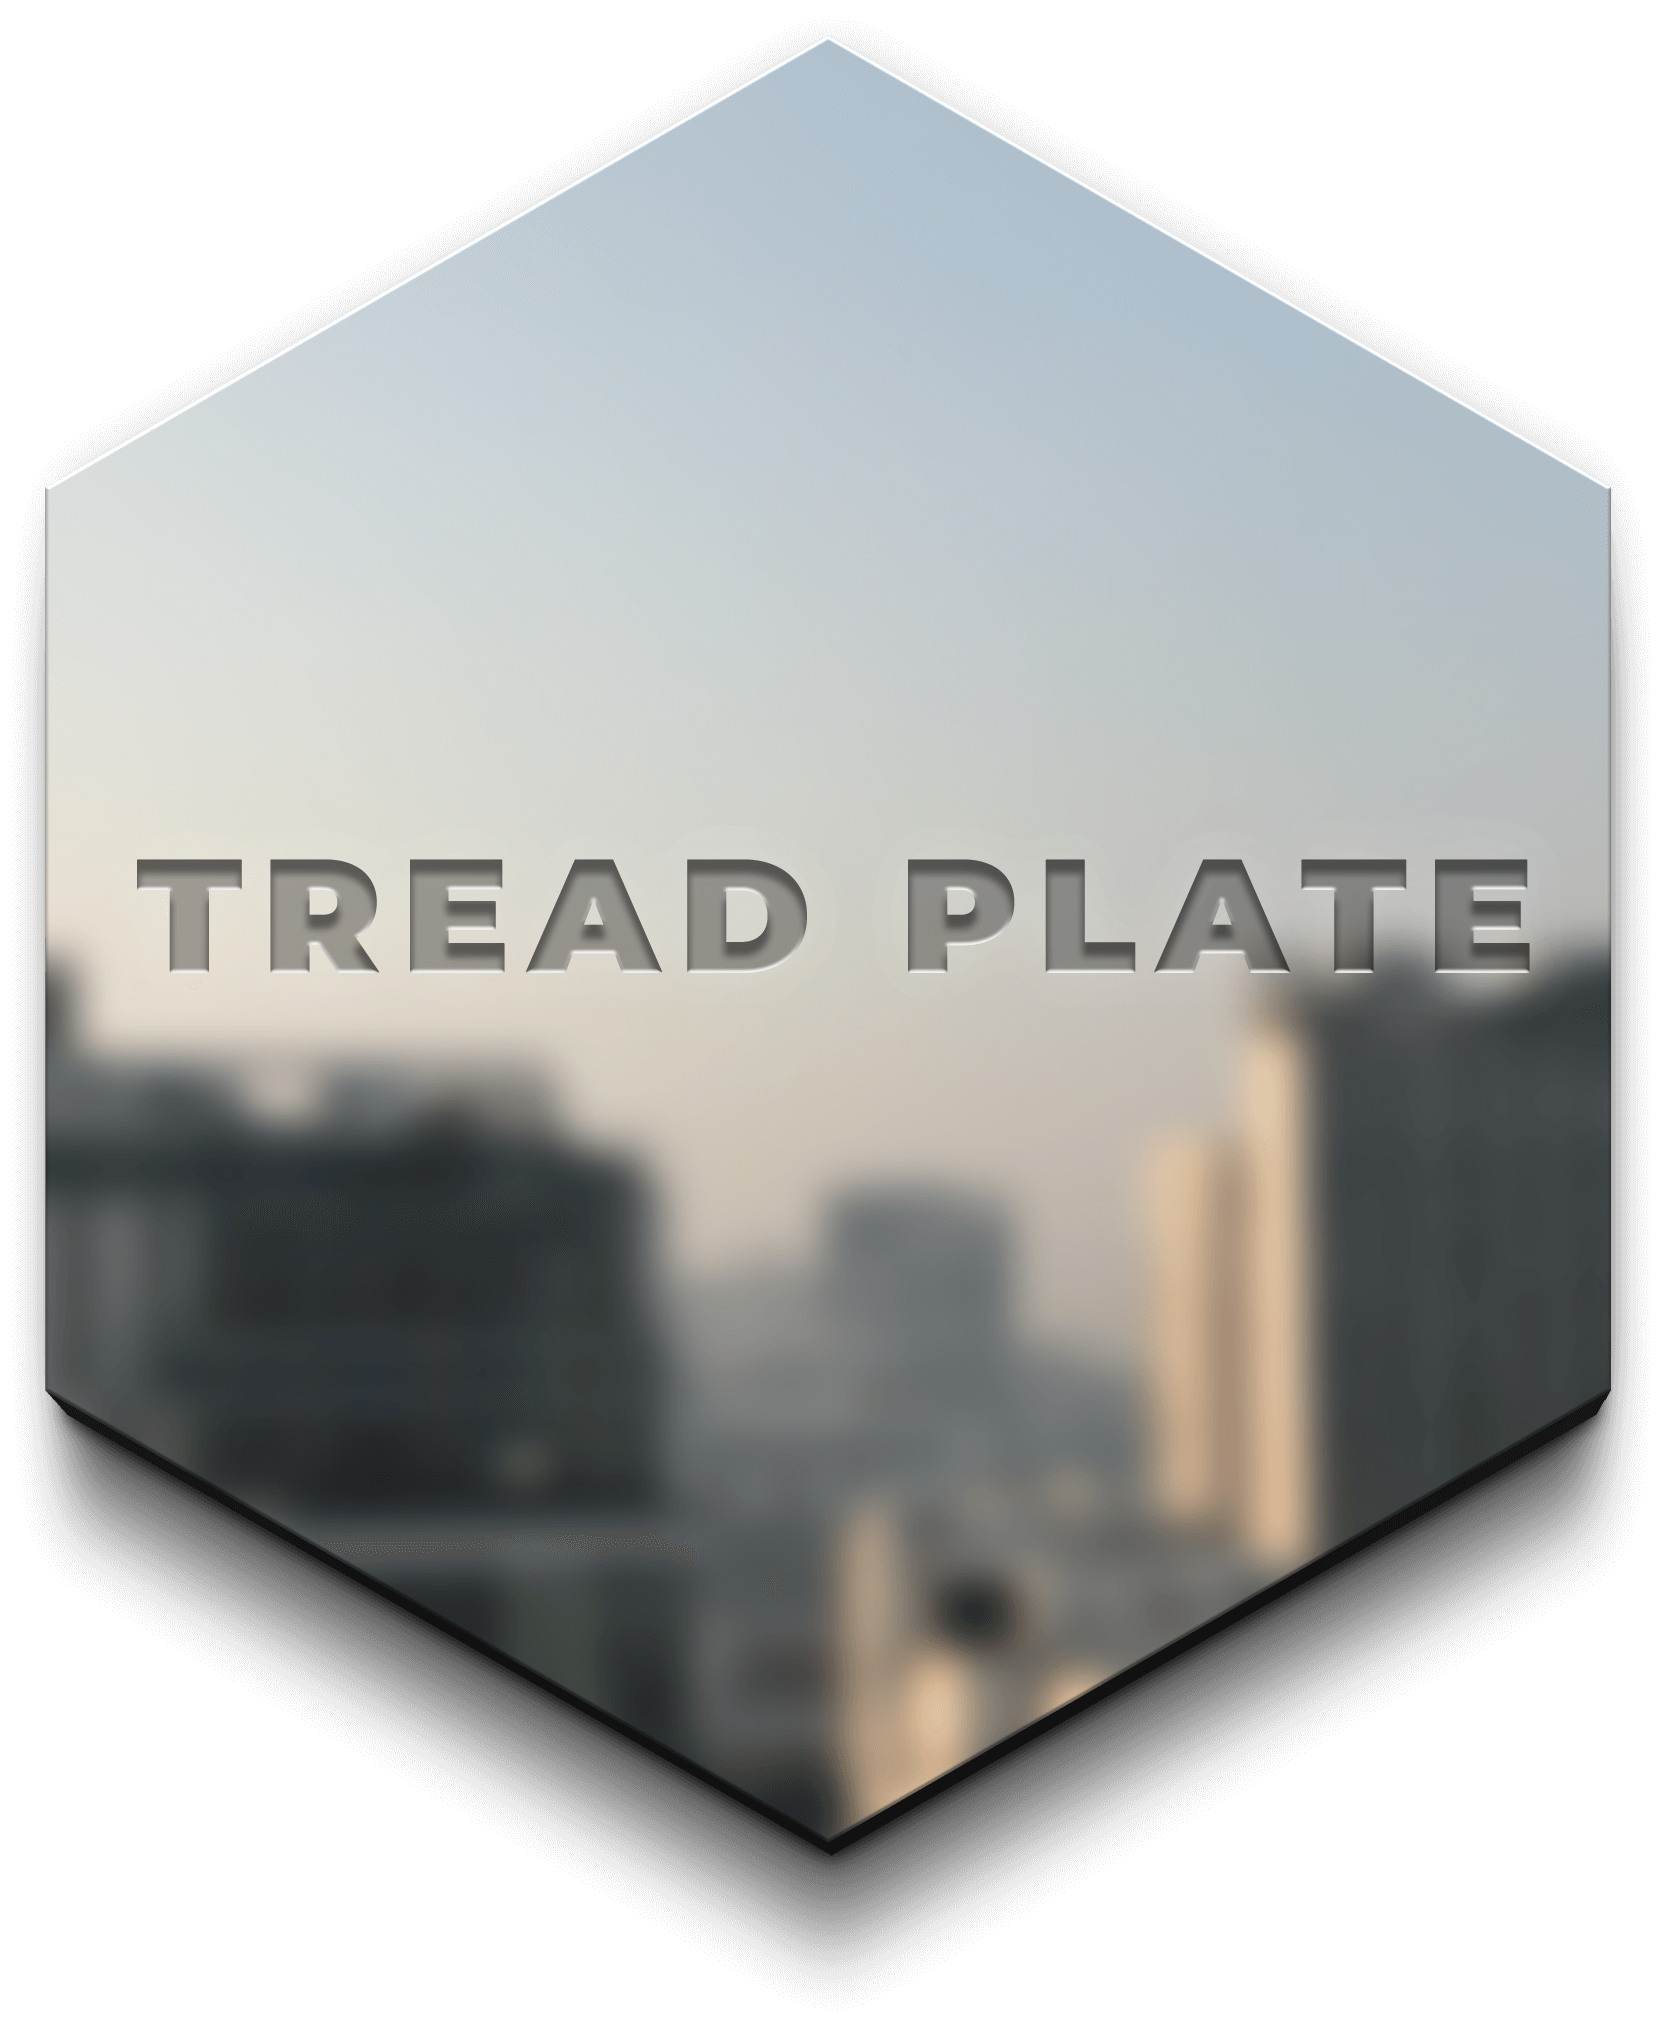 Tread plate